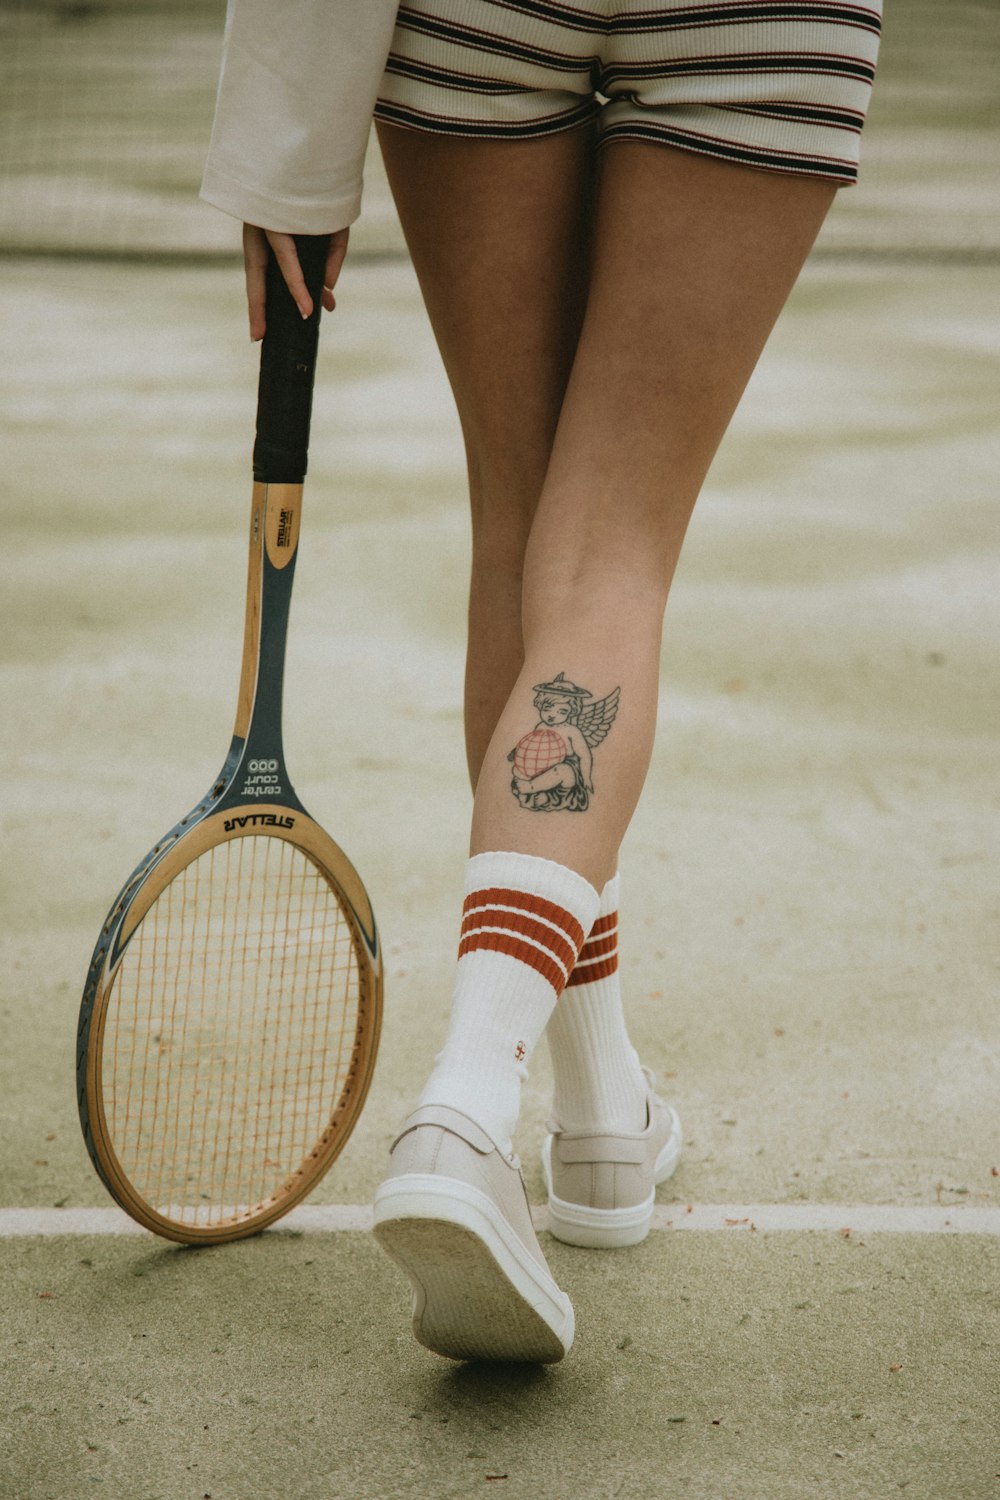 Mujer con calcetines blancos y rojos y zapatos de cuero blanco sosteniendo raqueta de tenis marrón y negro